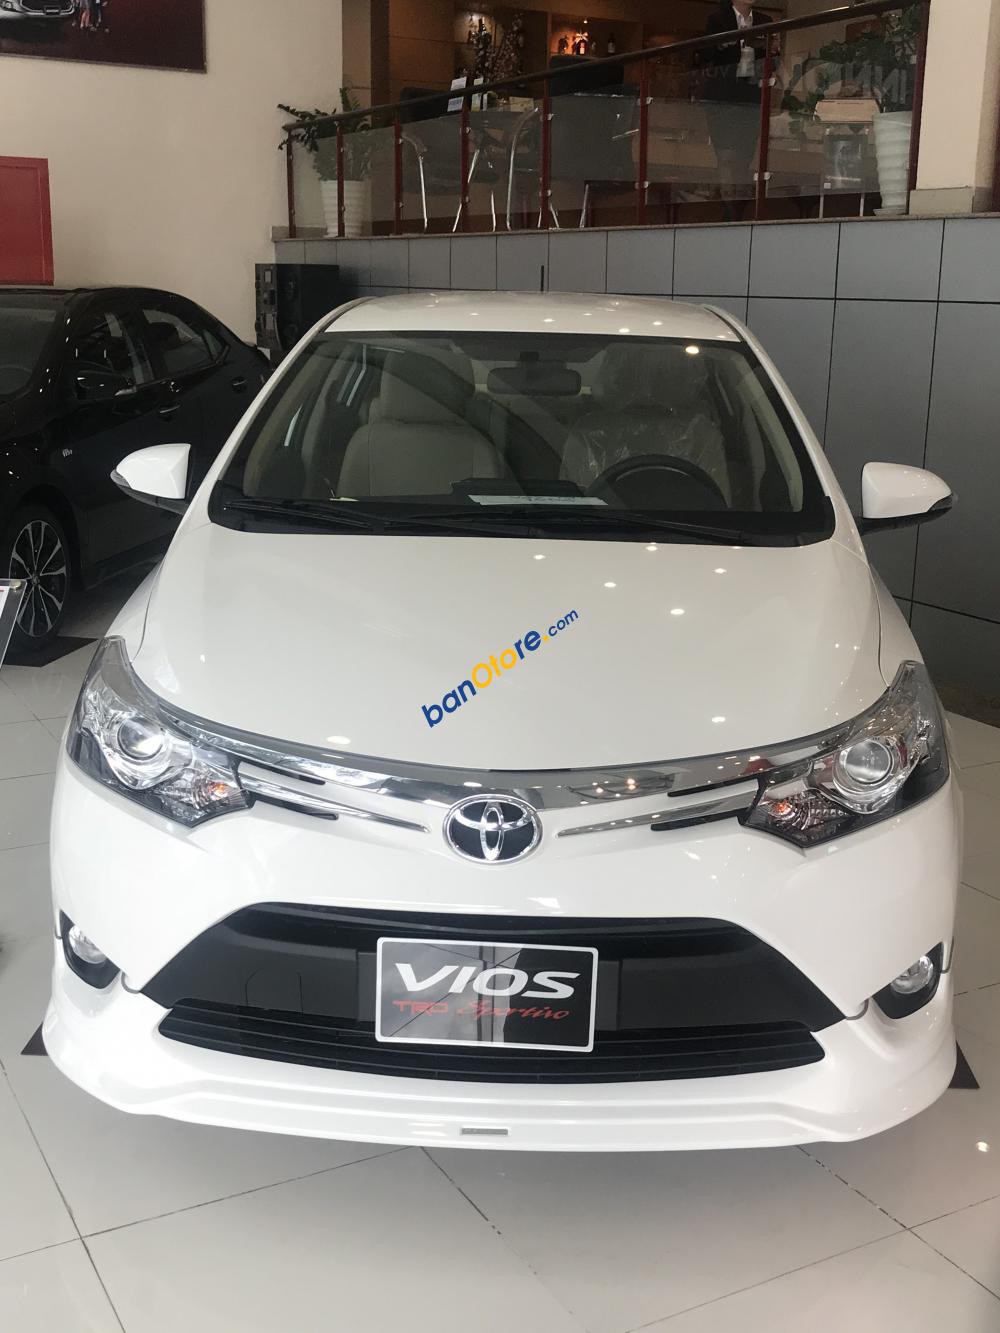 Bán xe Vios TRD 2018 giá 515tr (chưa VAT). LH ngay để nhận giá tốt: 0937589293 - Phúc